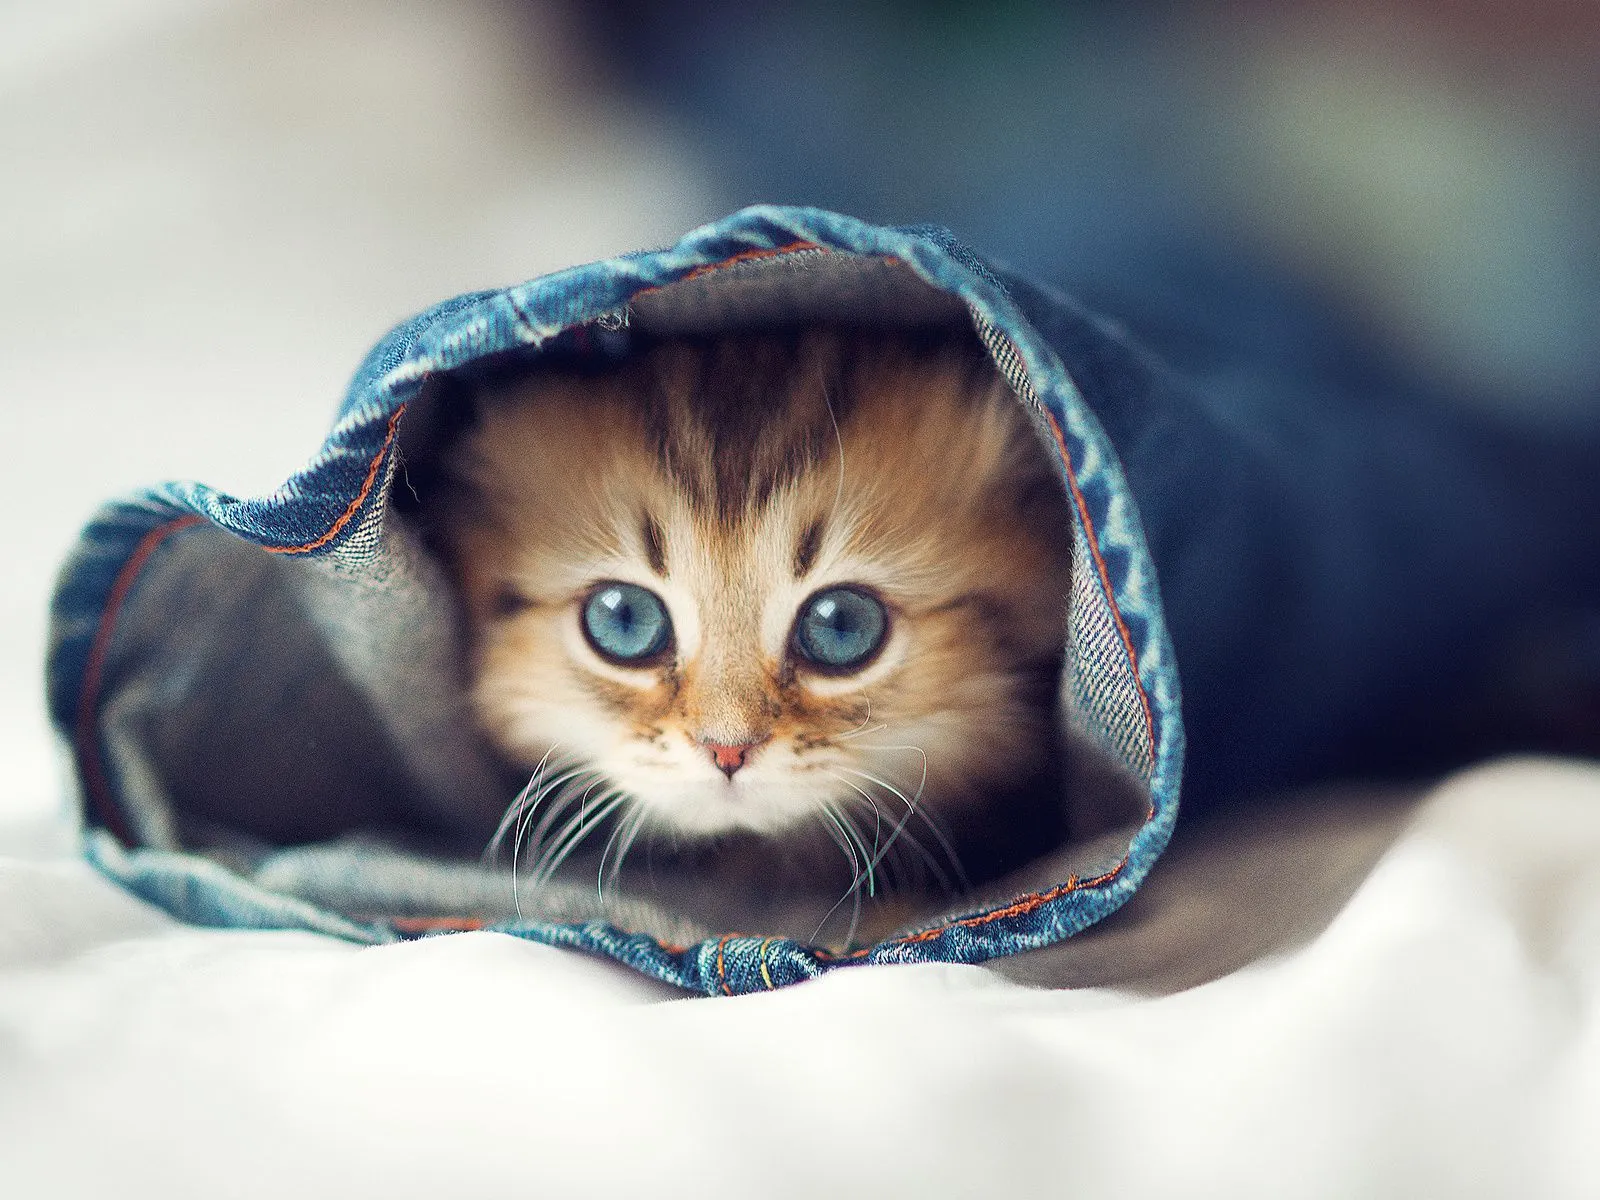 Fotos de gatos traviesos saliendo de un jeans ~ Mejores Fotos del ...